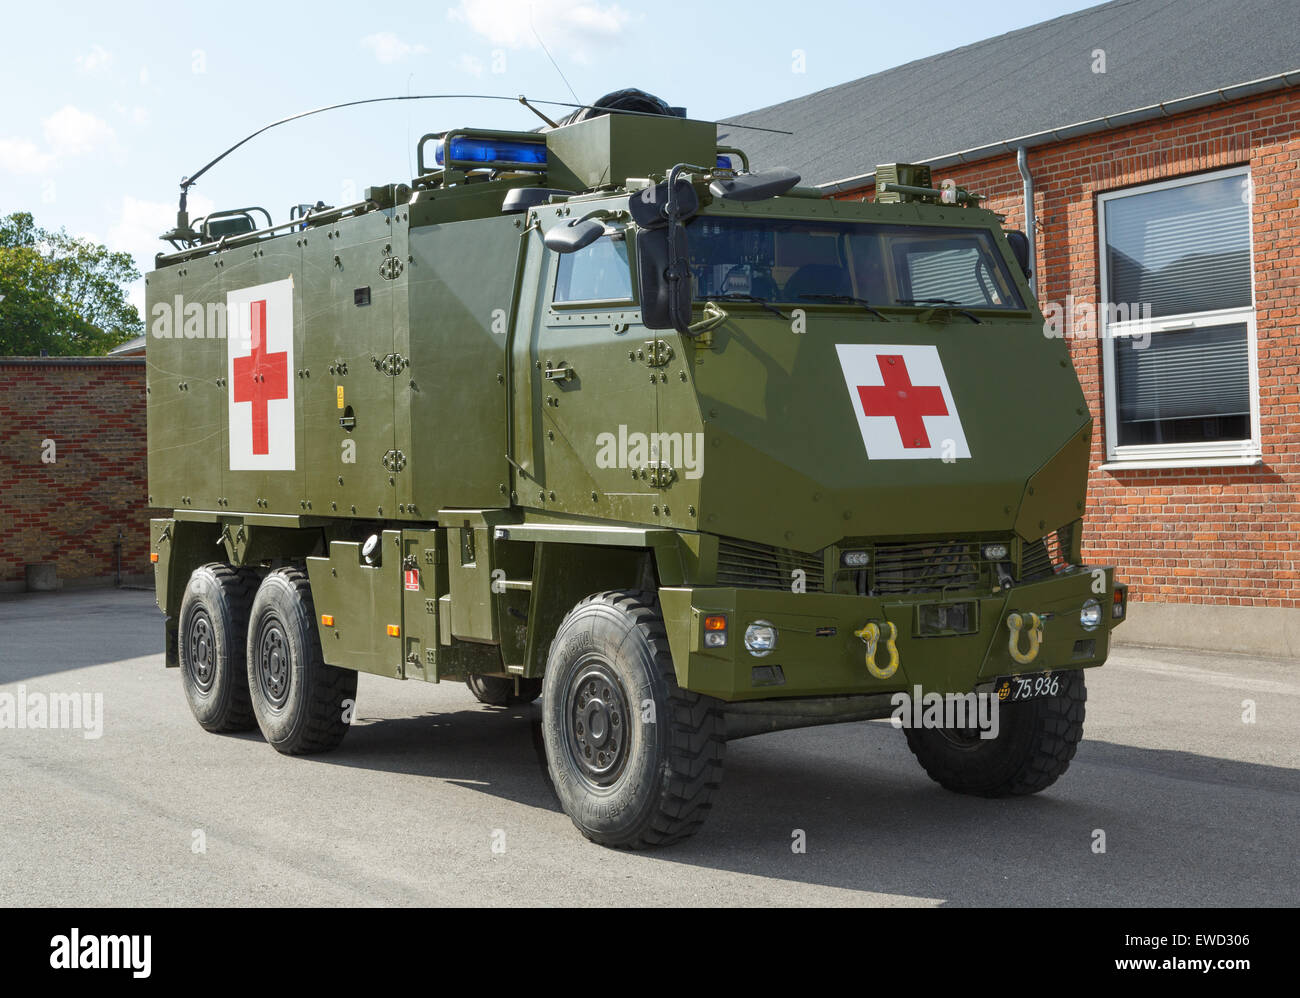 Mowag duro protegido vehículo táctico todo terreno en 6×6 configuración utilizada como una ambulancia militar del ejército danés. Foto de stock